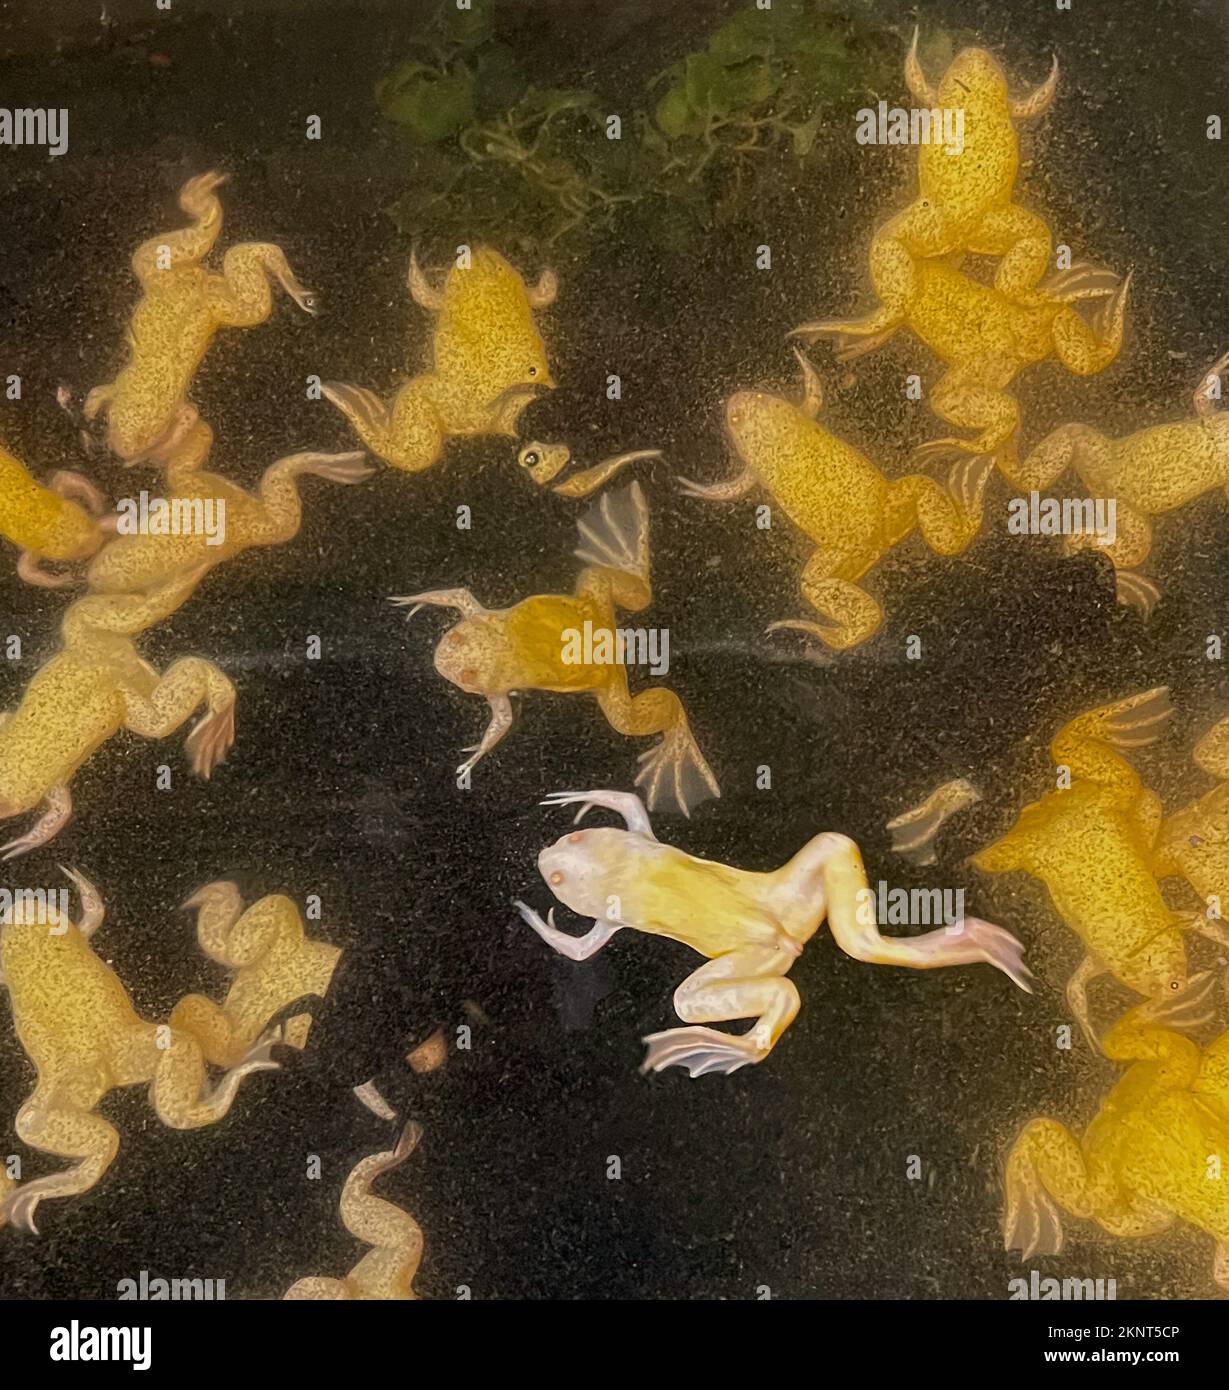 Voyez les grenouilles jaunes, les amphibiens, montrés dans le grand réservoir d'eau où ils sont élevés pour la science et le hobby. Vous pouvez voir leurs pieds de lit en toile. Banque D'Images